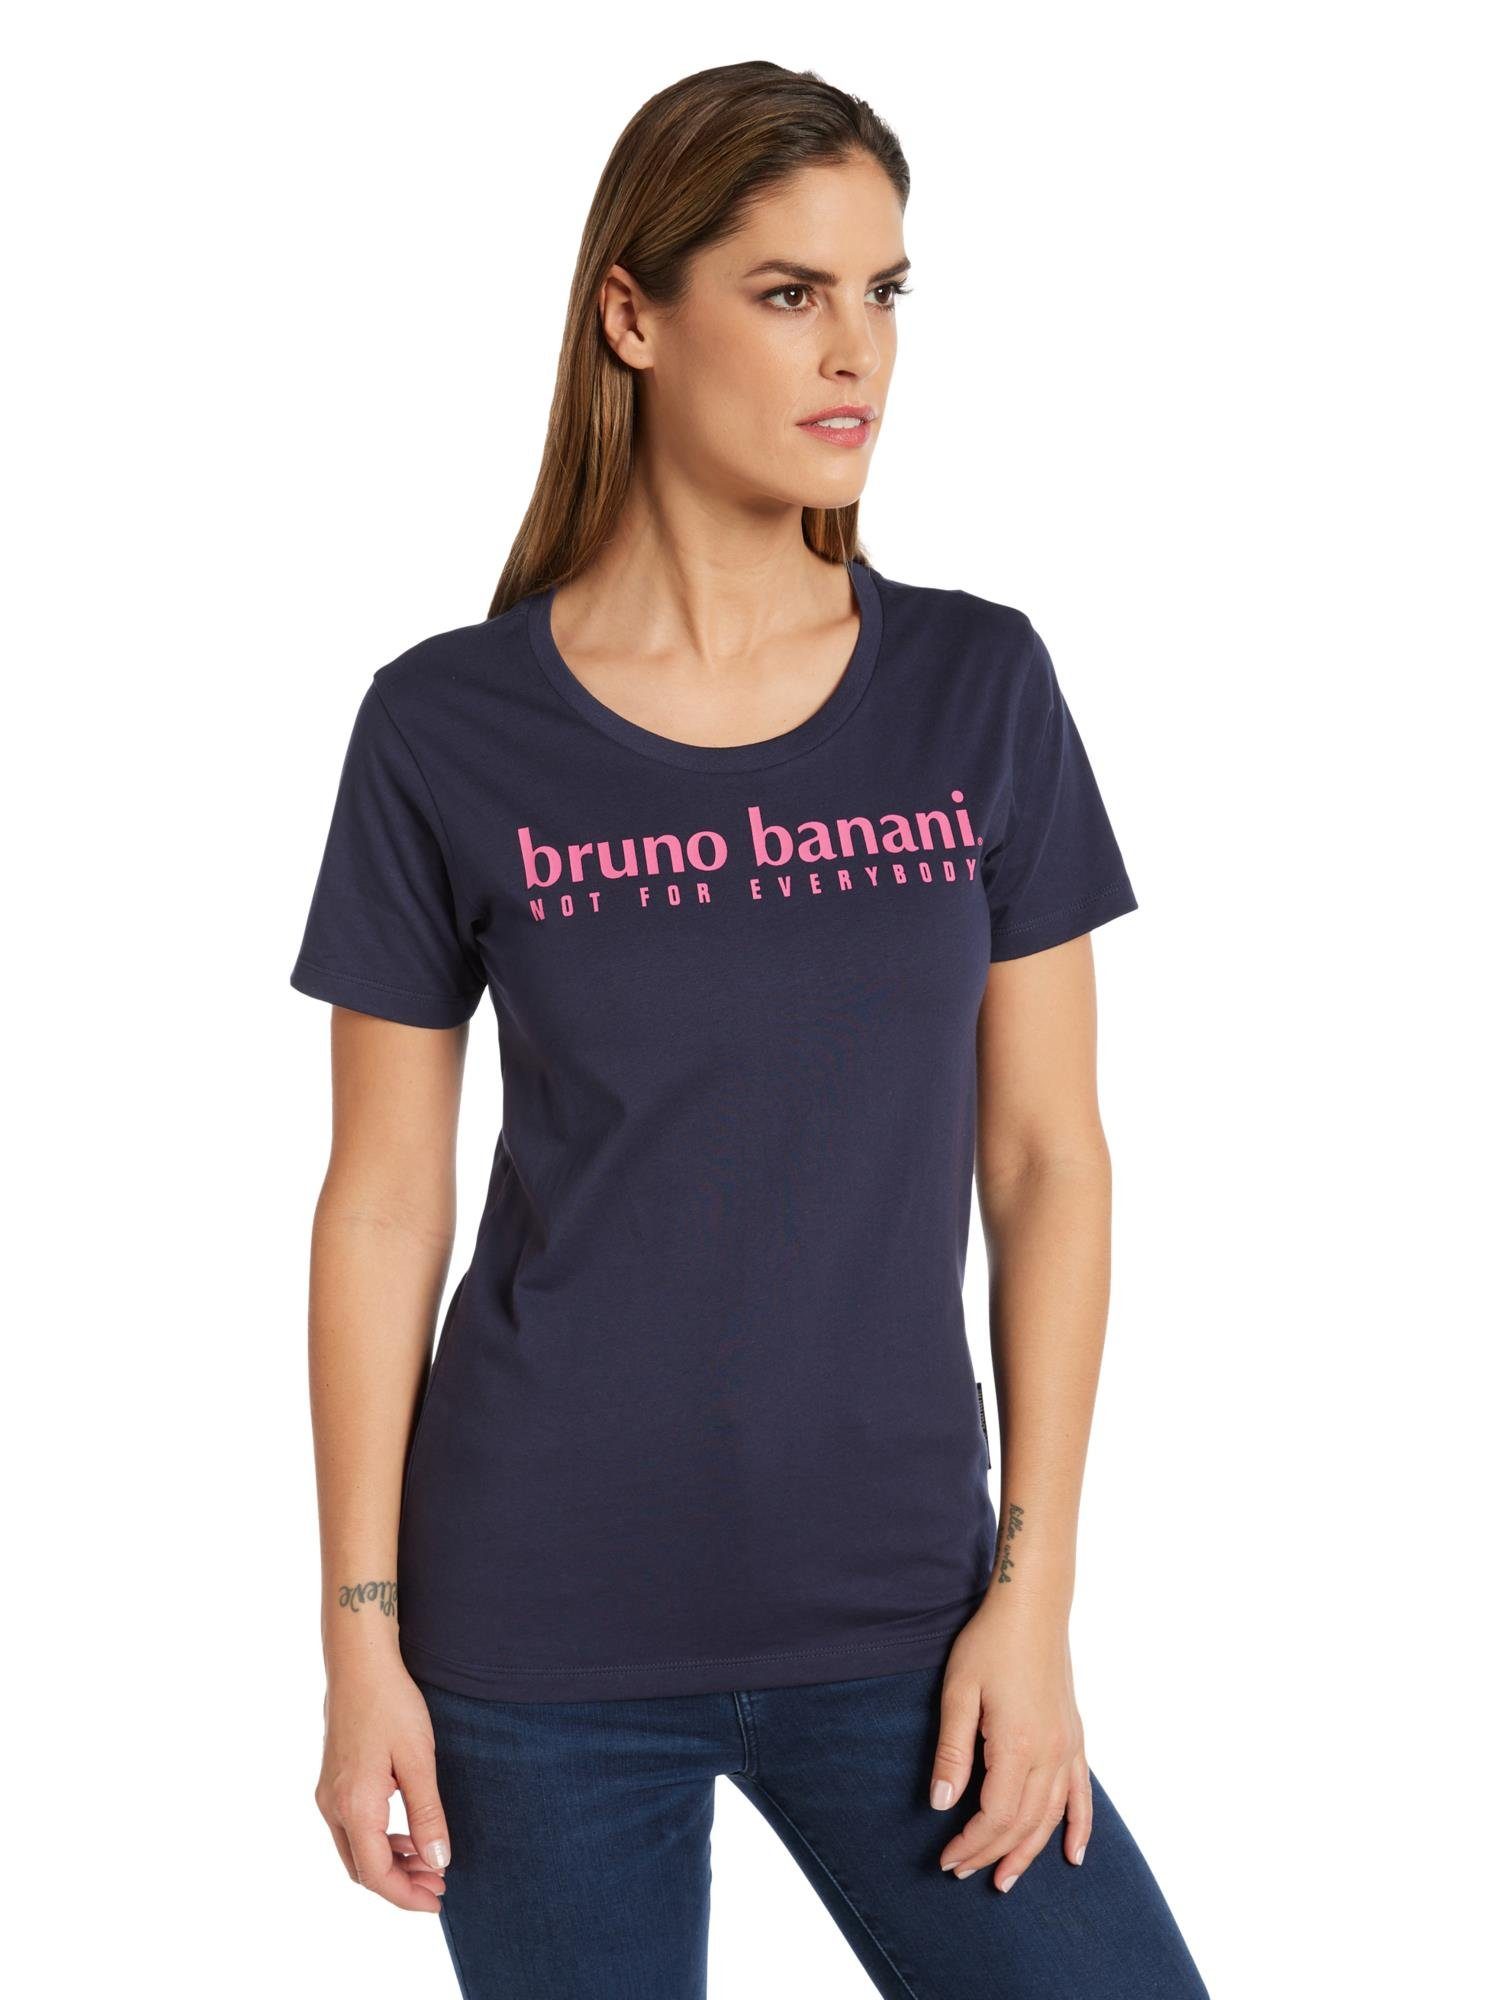 Bruno Banani T-Shirt Avery Navy